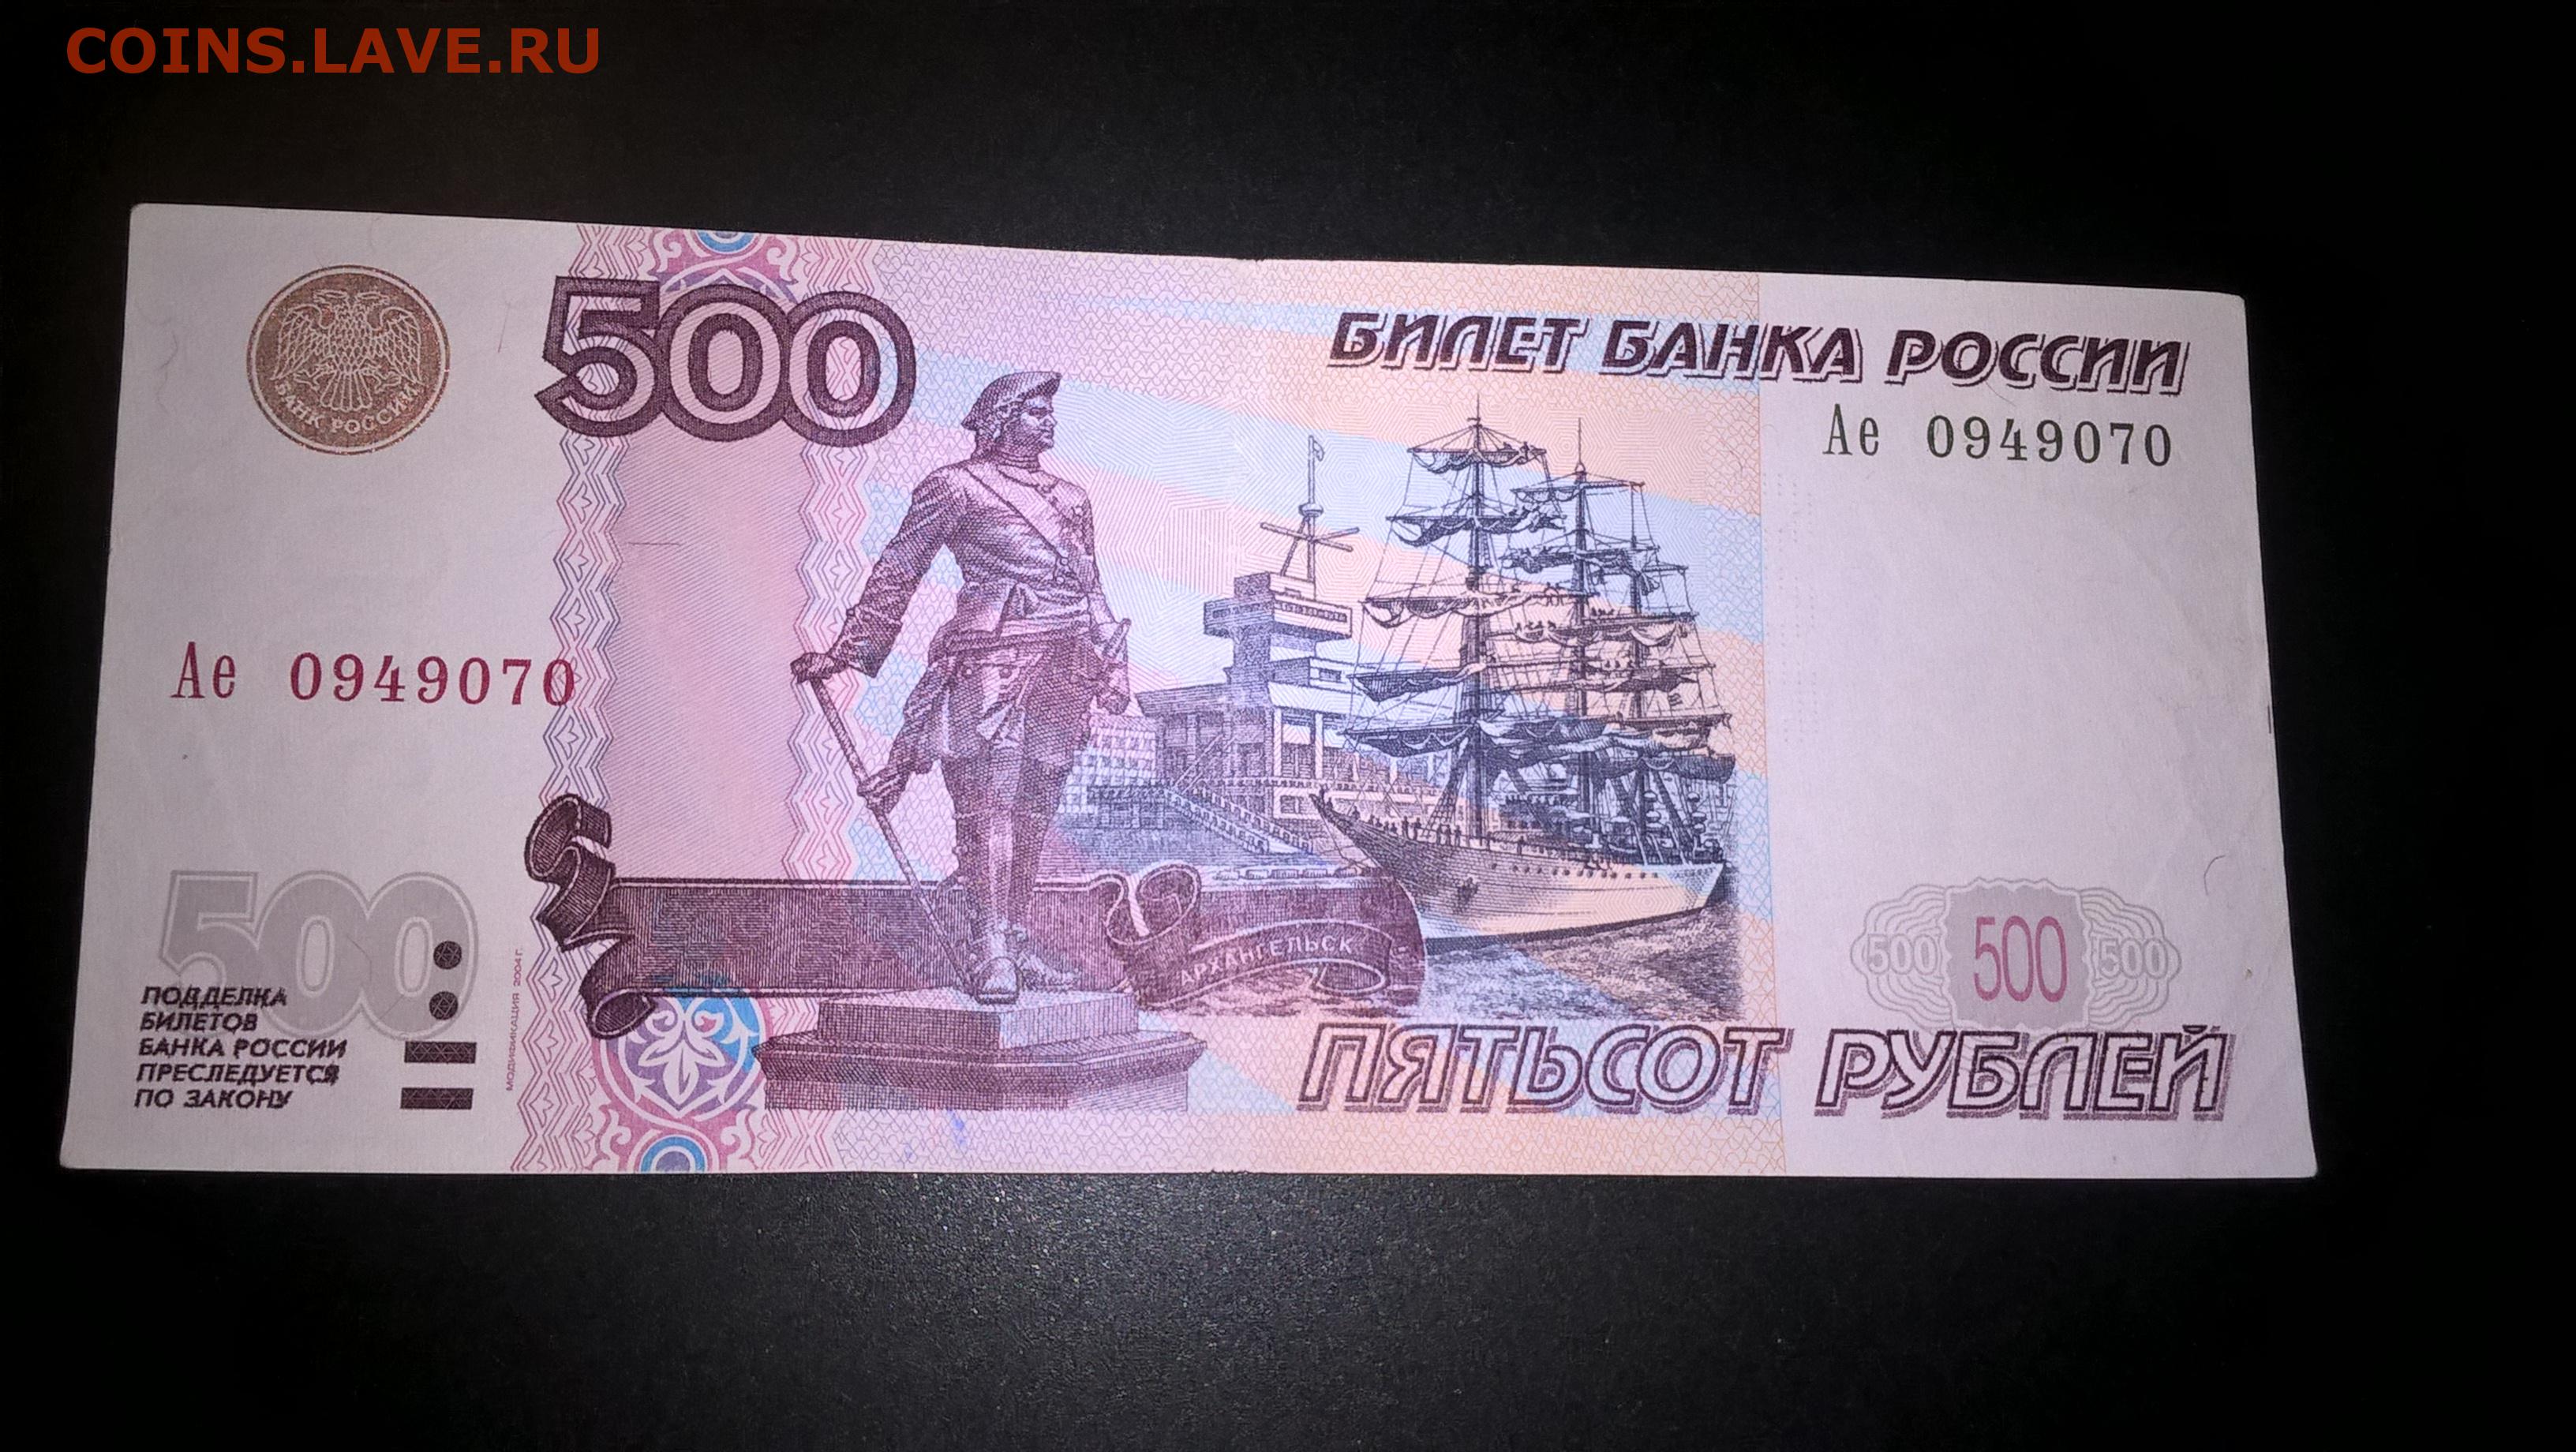 Долями 500 рублей. 500 Рублей 1997. Билет банка России 500 рублей. Пятьсот рублей 1997. Банкноты с автомобилями.